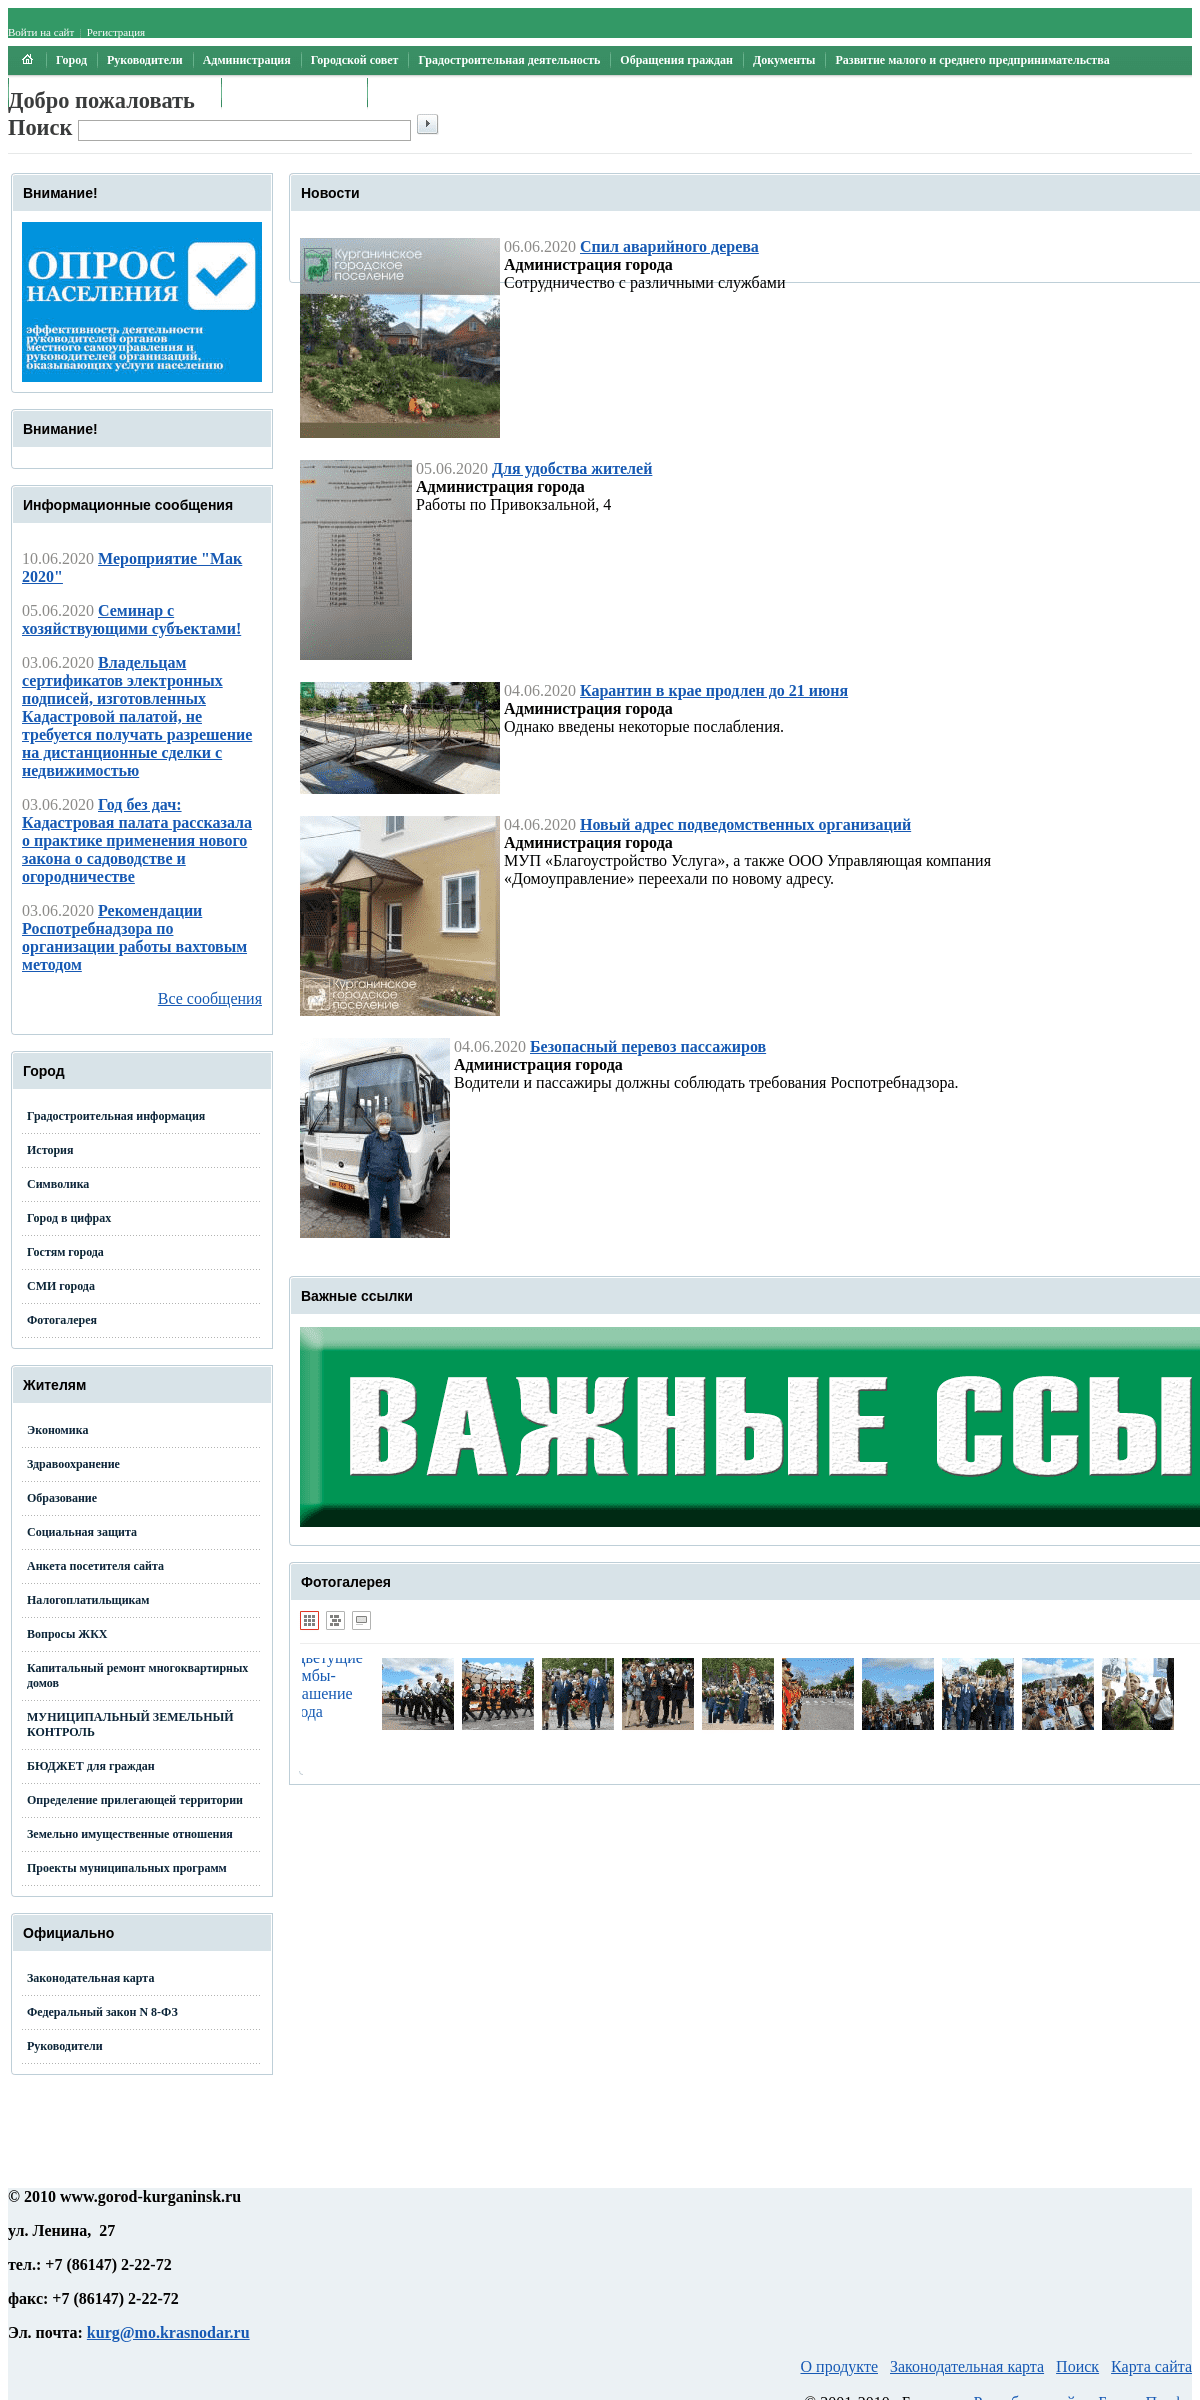 A complete backup of gorod-kurganinsk.ru